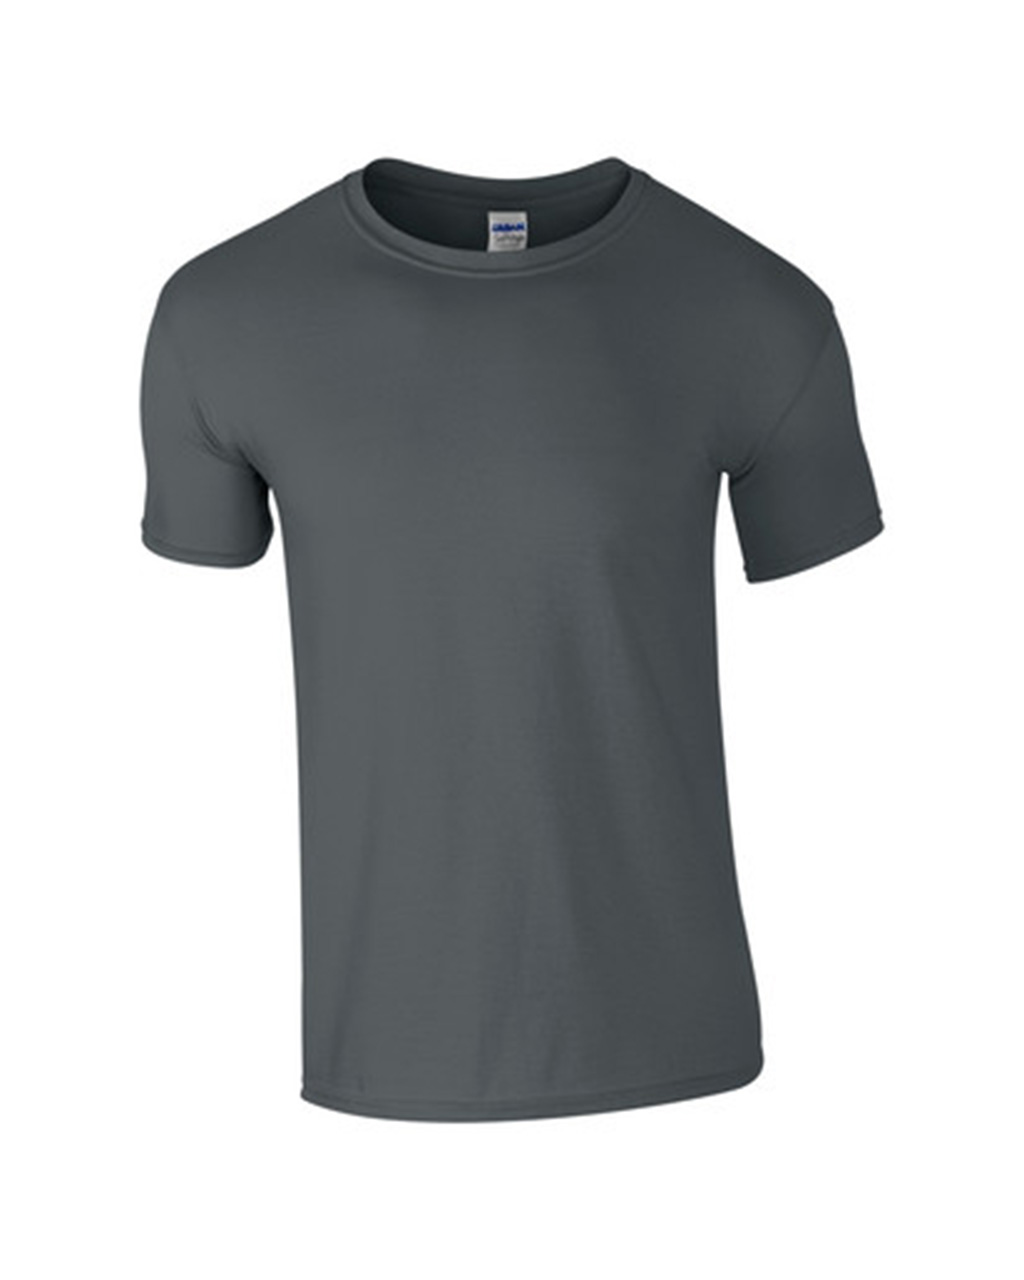 Kedai Toko Baju Tshirt Online Budget Murah Anda! 2013: Baju 76000 ...